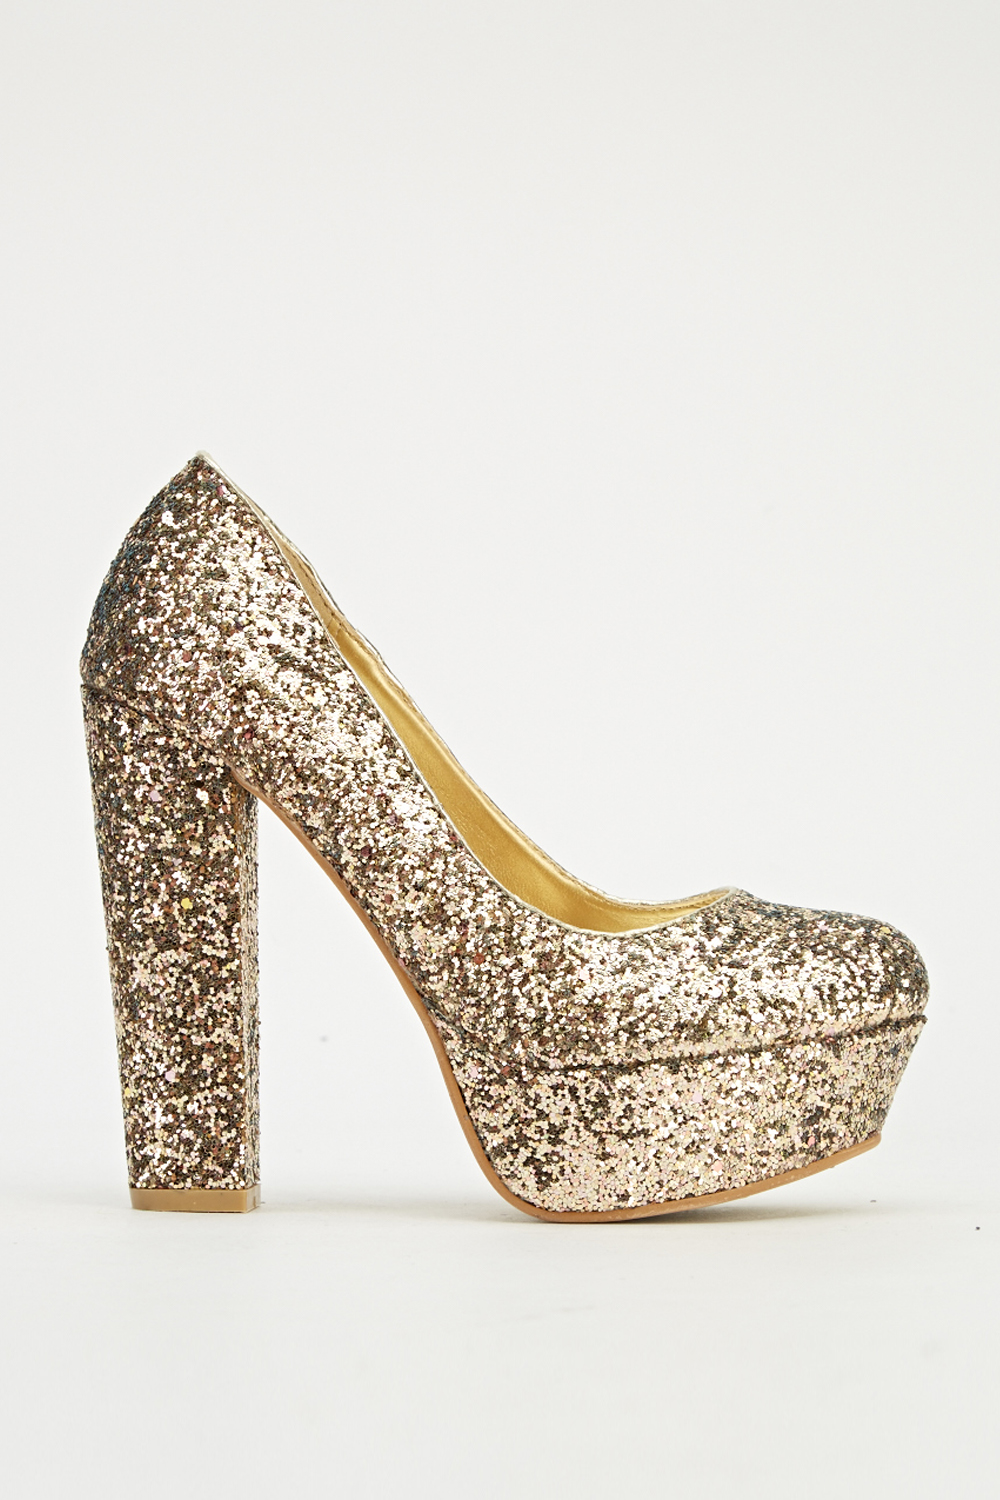 Glitter Block Heels - Just $7